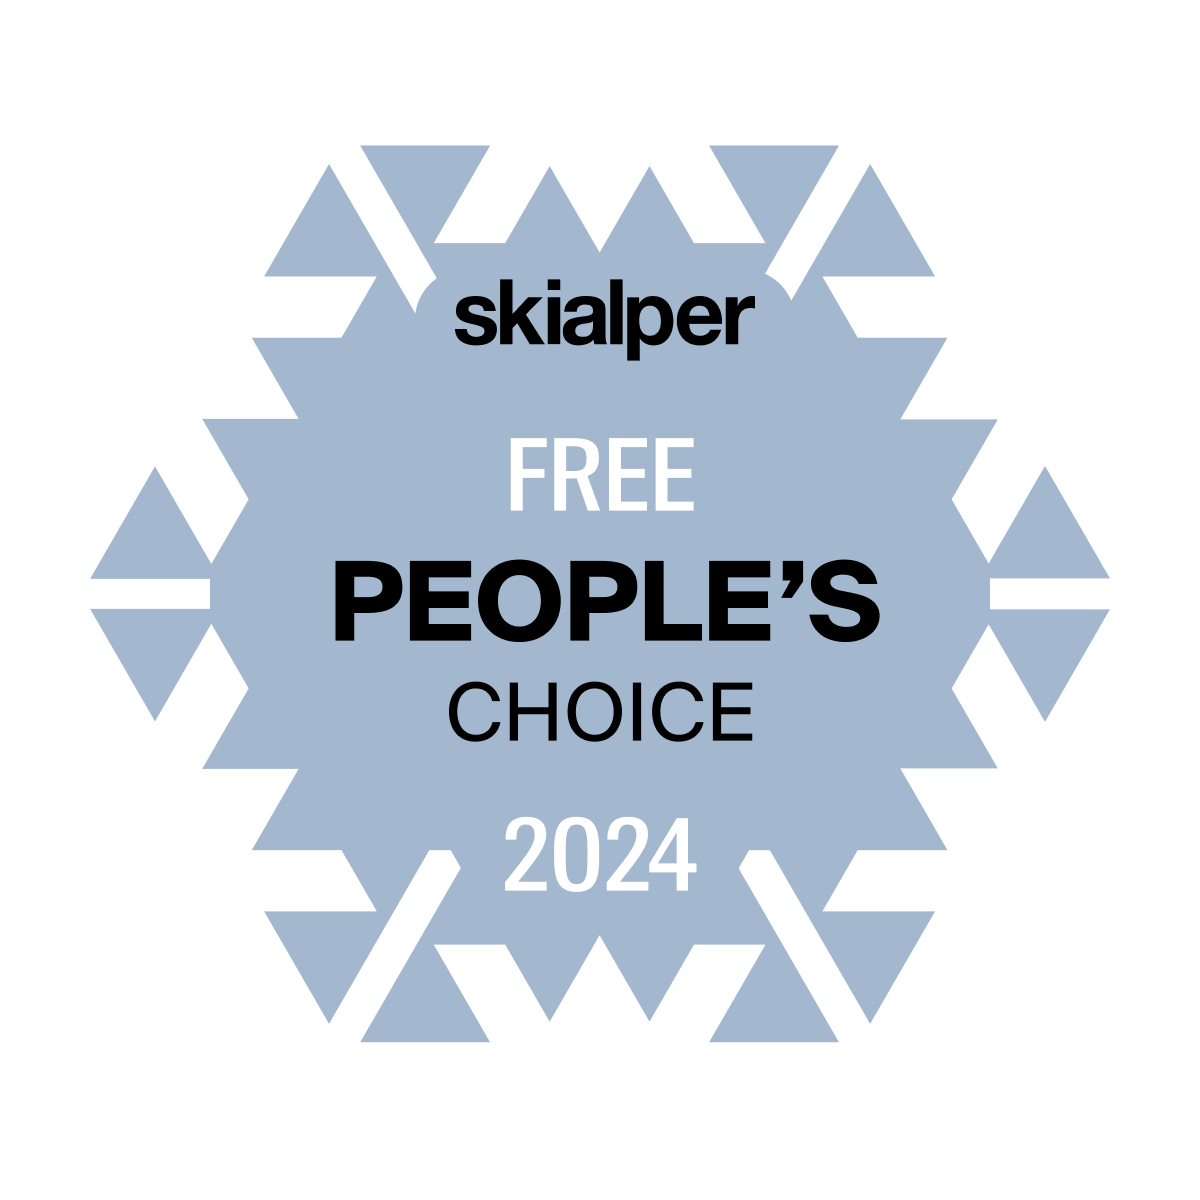 People's choice Free